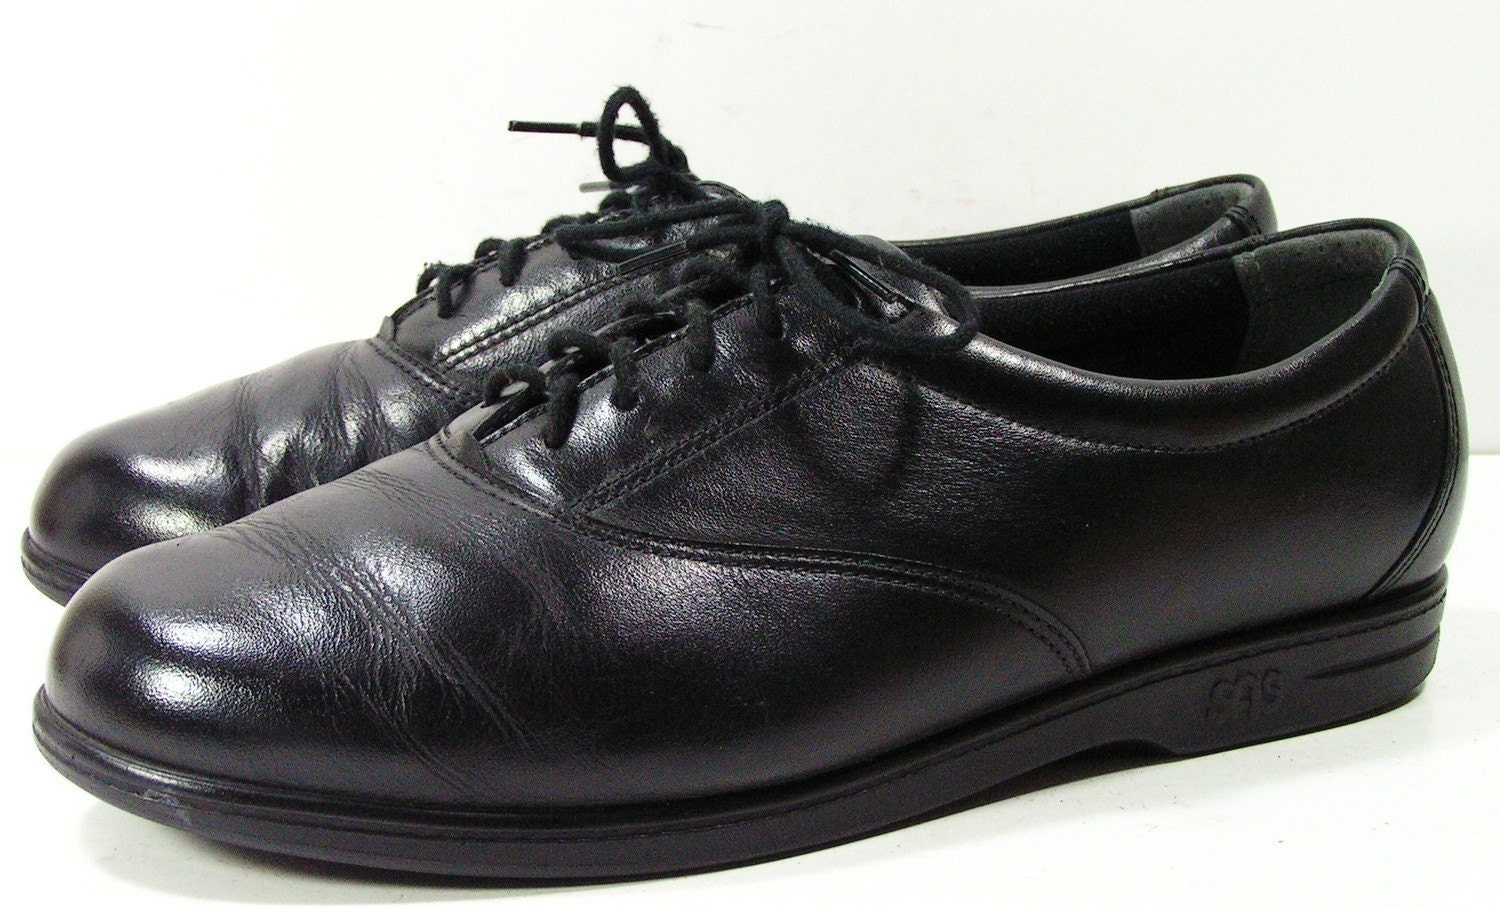 sas tripad comfort shoes womens 9.5 M B black leather walking